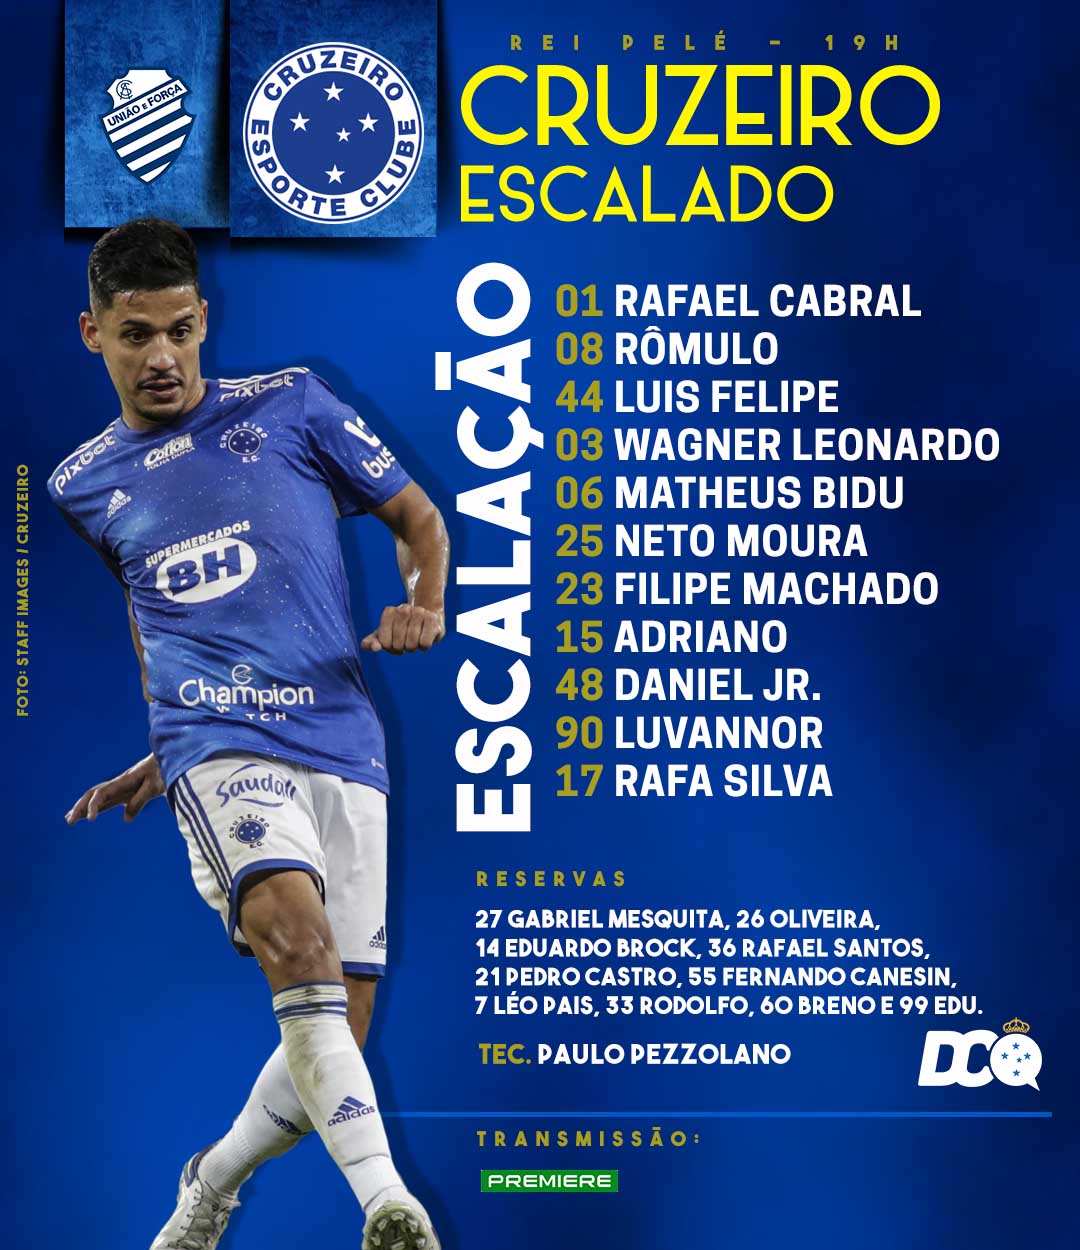 Cruzeiro escalado